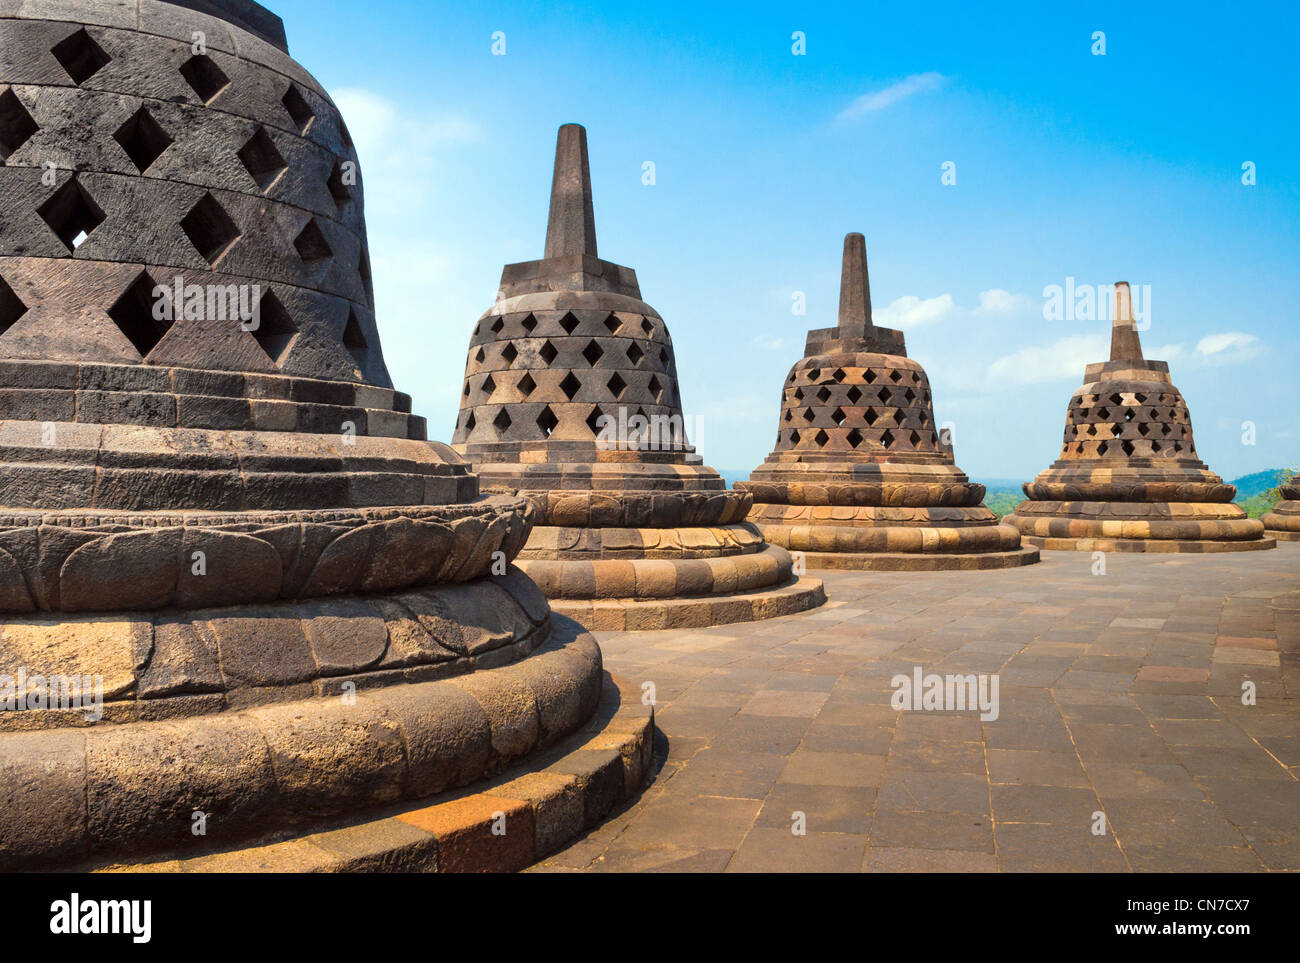 Atop Borobudur temple site in Indonesia Stock Photo